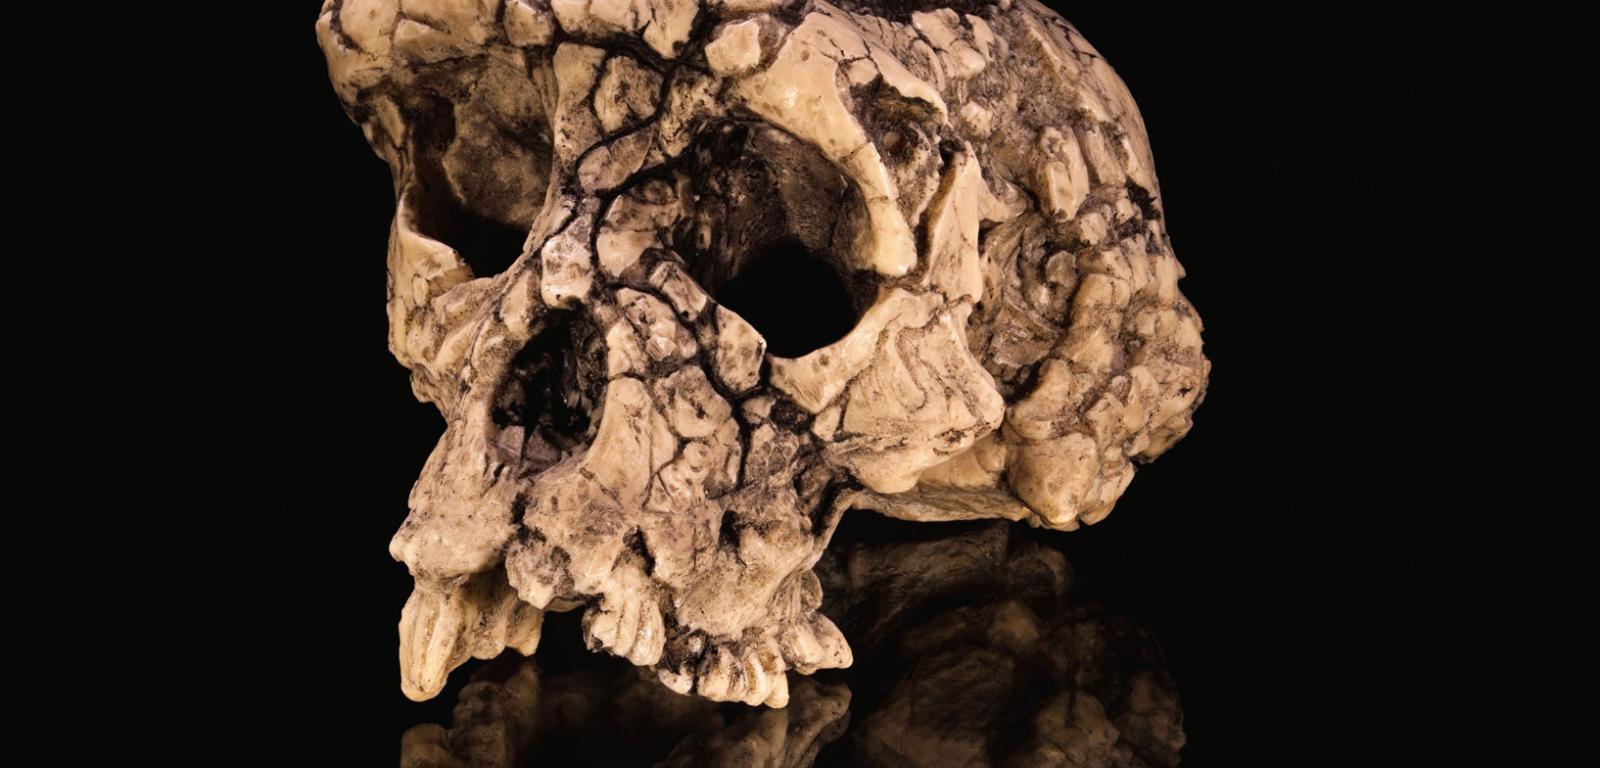 Czaszka i kości kończyn należące do liczącego 7 mln lat hominina z gatunku Sahelanthropus tchadensis.